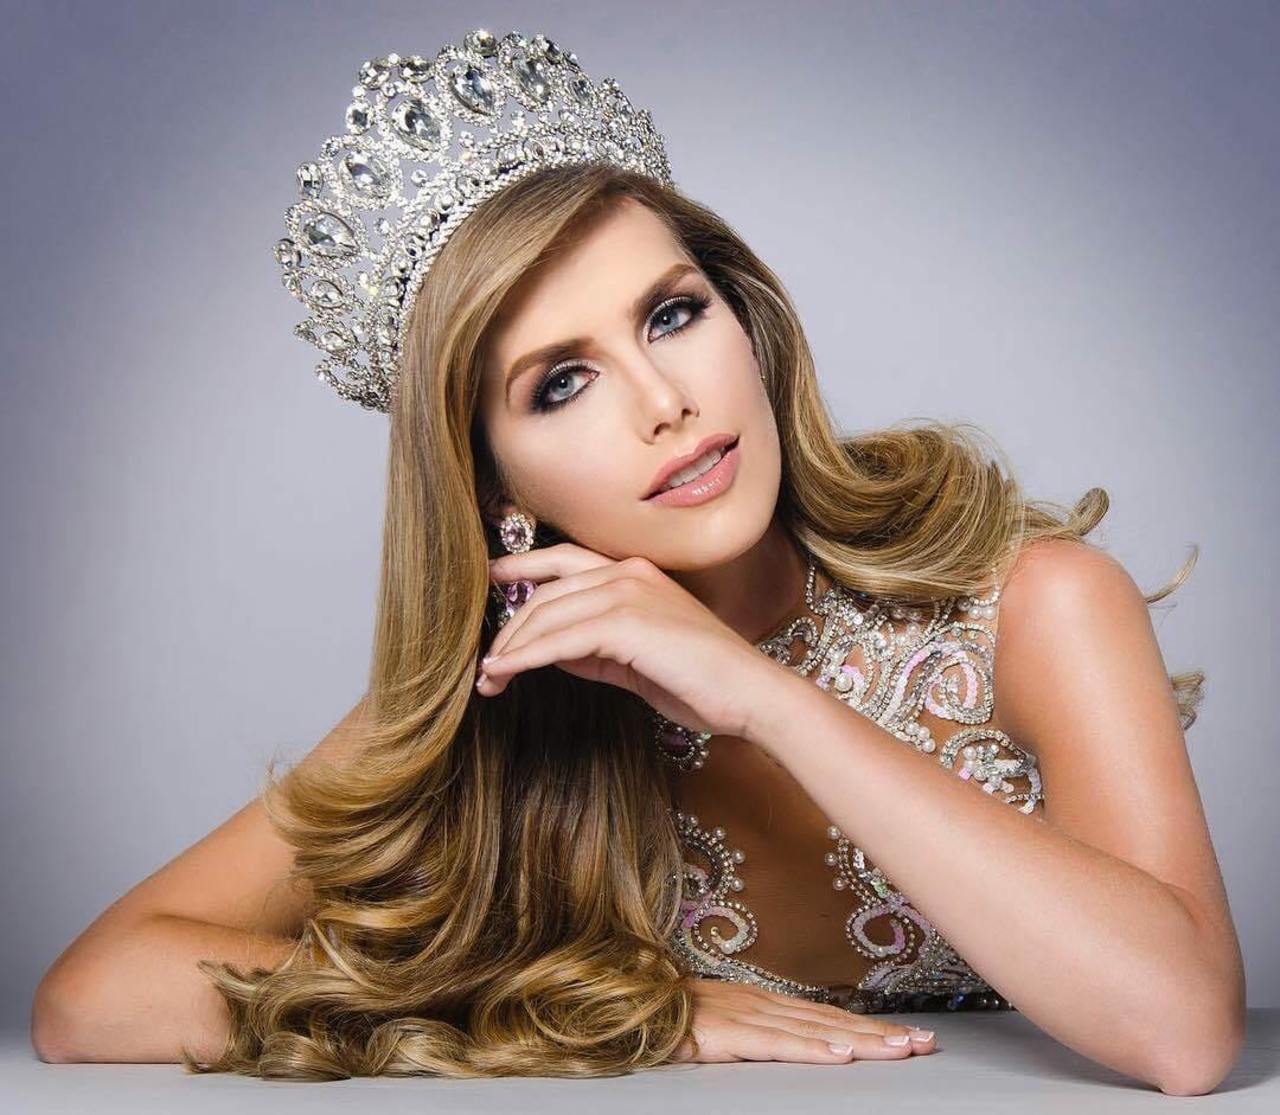 Belleza transexual. Ángela Ponce, quien ganó Miss España, competirá por la corona de Miss Universo. (ARCHIVO)